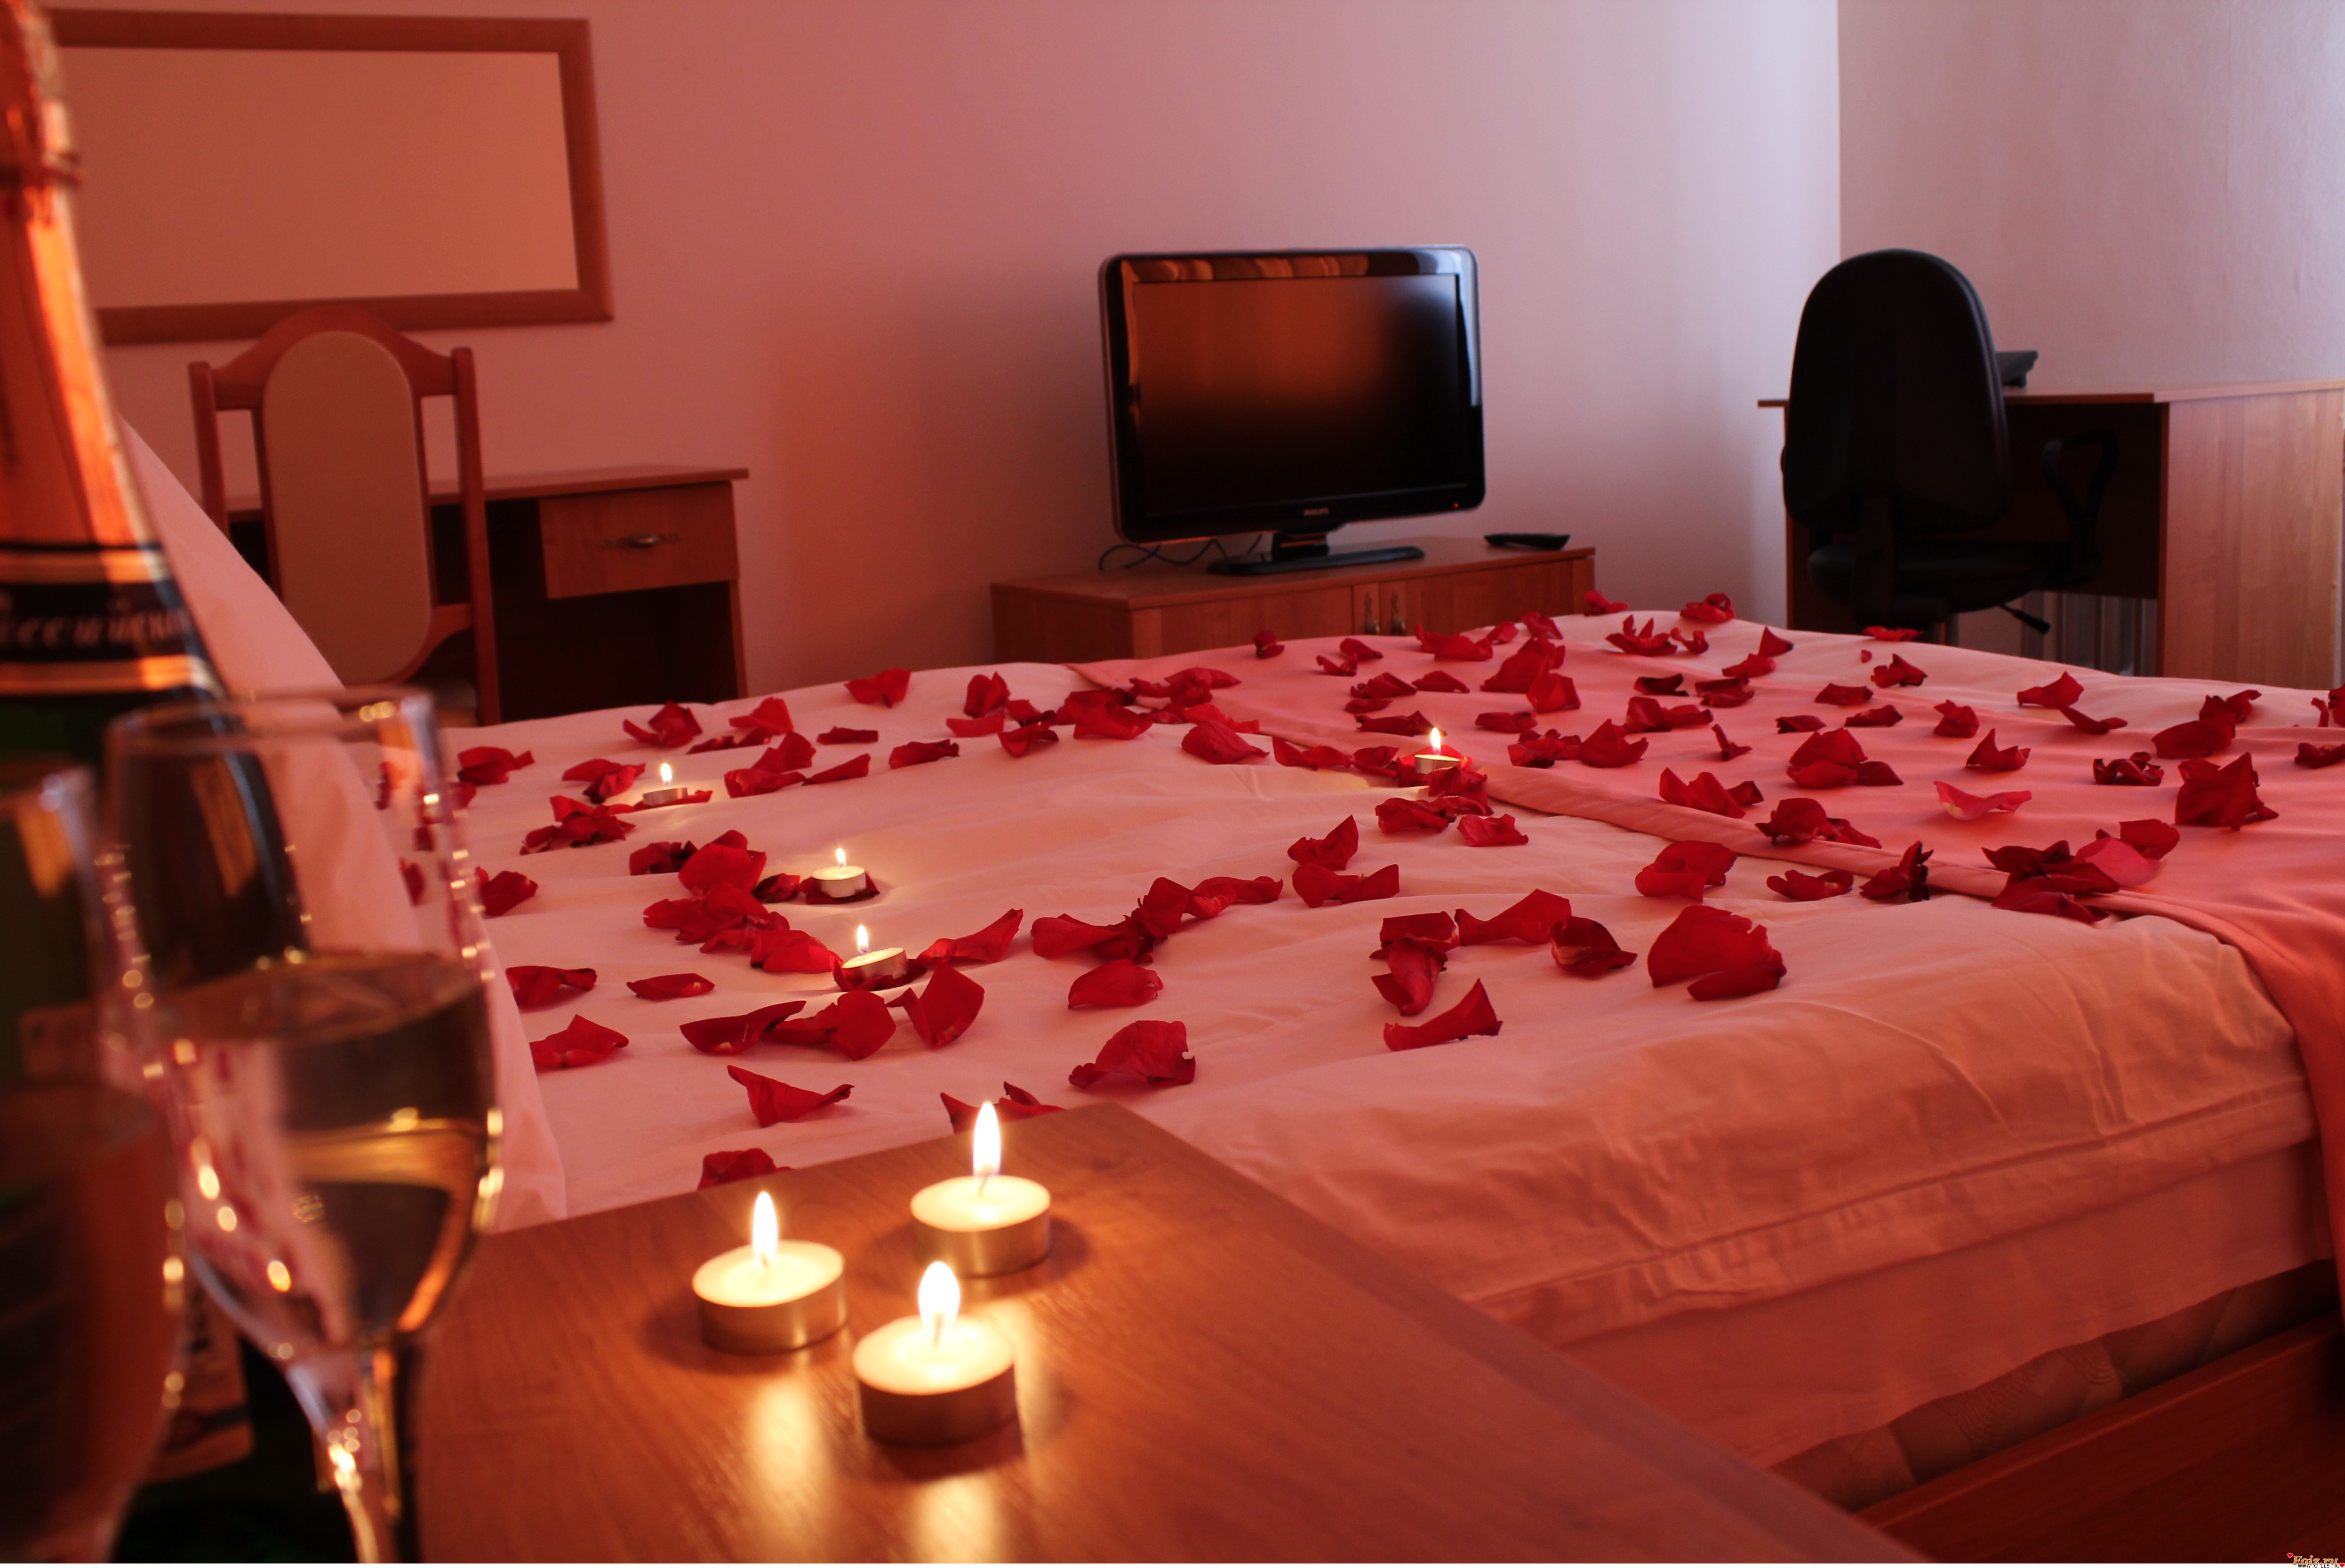 Нереально красивый романтический секс в постели с лепестками роз 